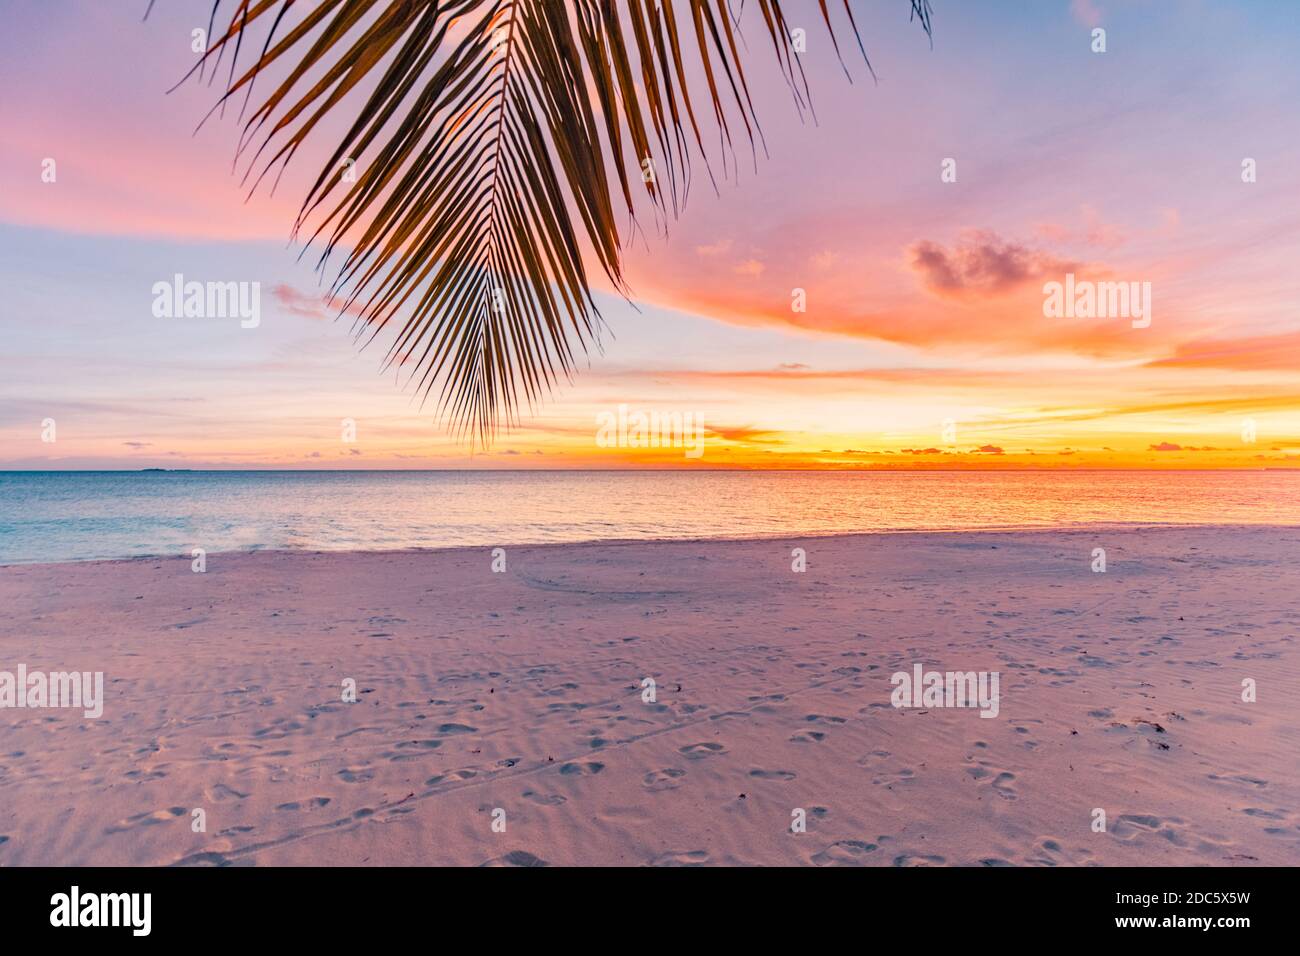 Spiaggia tropicale al tramonto, paesaggio rilassante. Le foglie di palma sopra il mare colorato e le nuvole del cielo. Tranquillo paesaggio naturale, vista sulla spiaggia. Calma, ispira Foto Stock